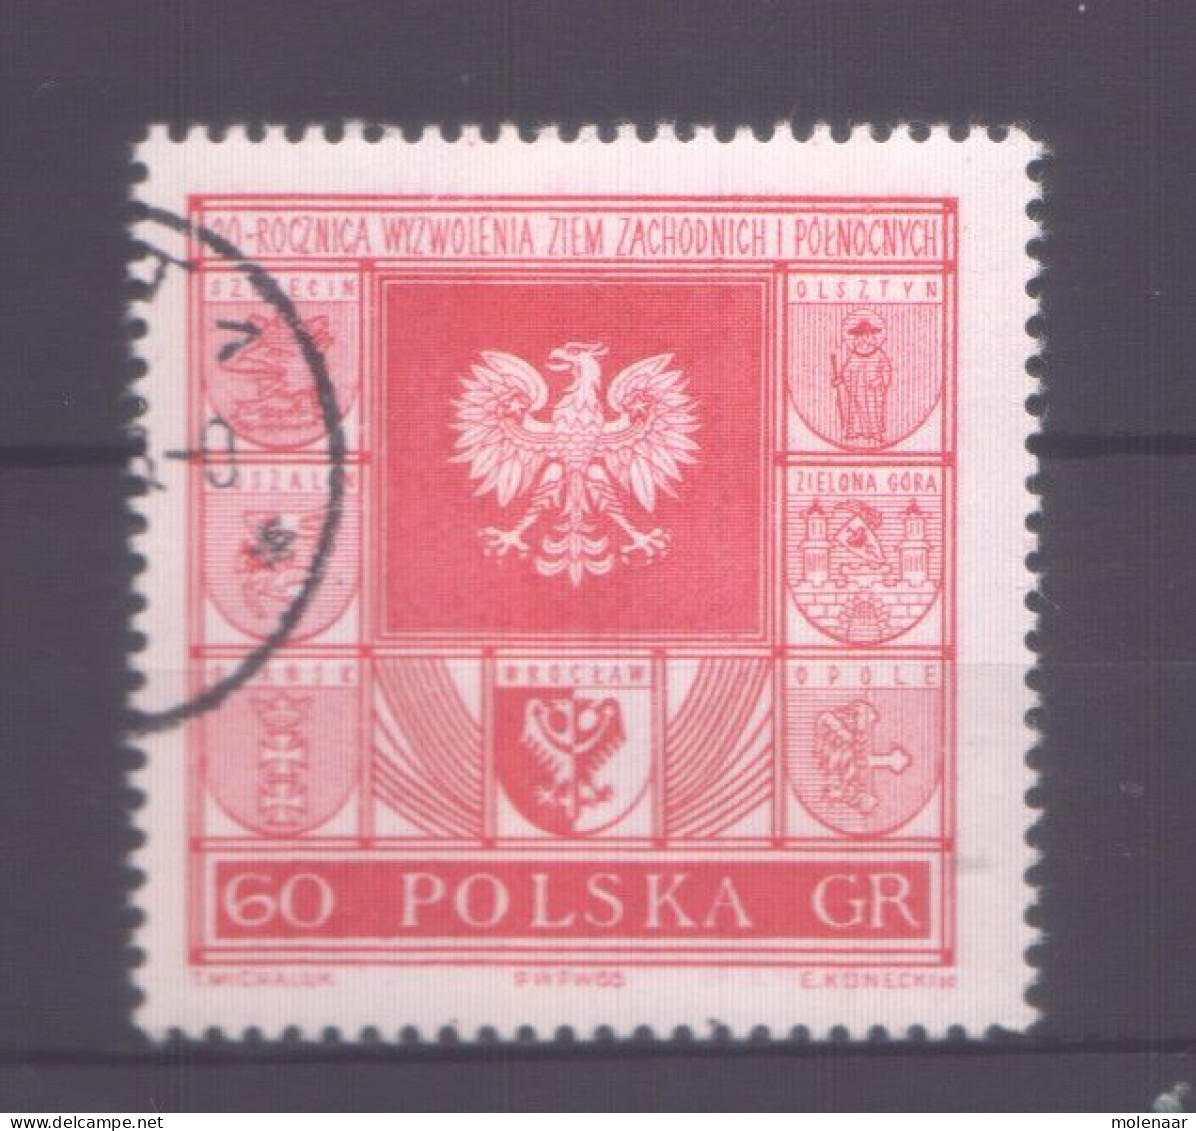 Postzegels > Europa > Polen > 1944-.... Republiek > 1971-80 > Gebruikt No. 1576 No. (11970) - Usados